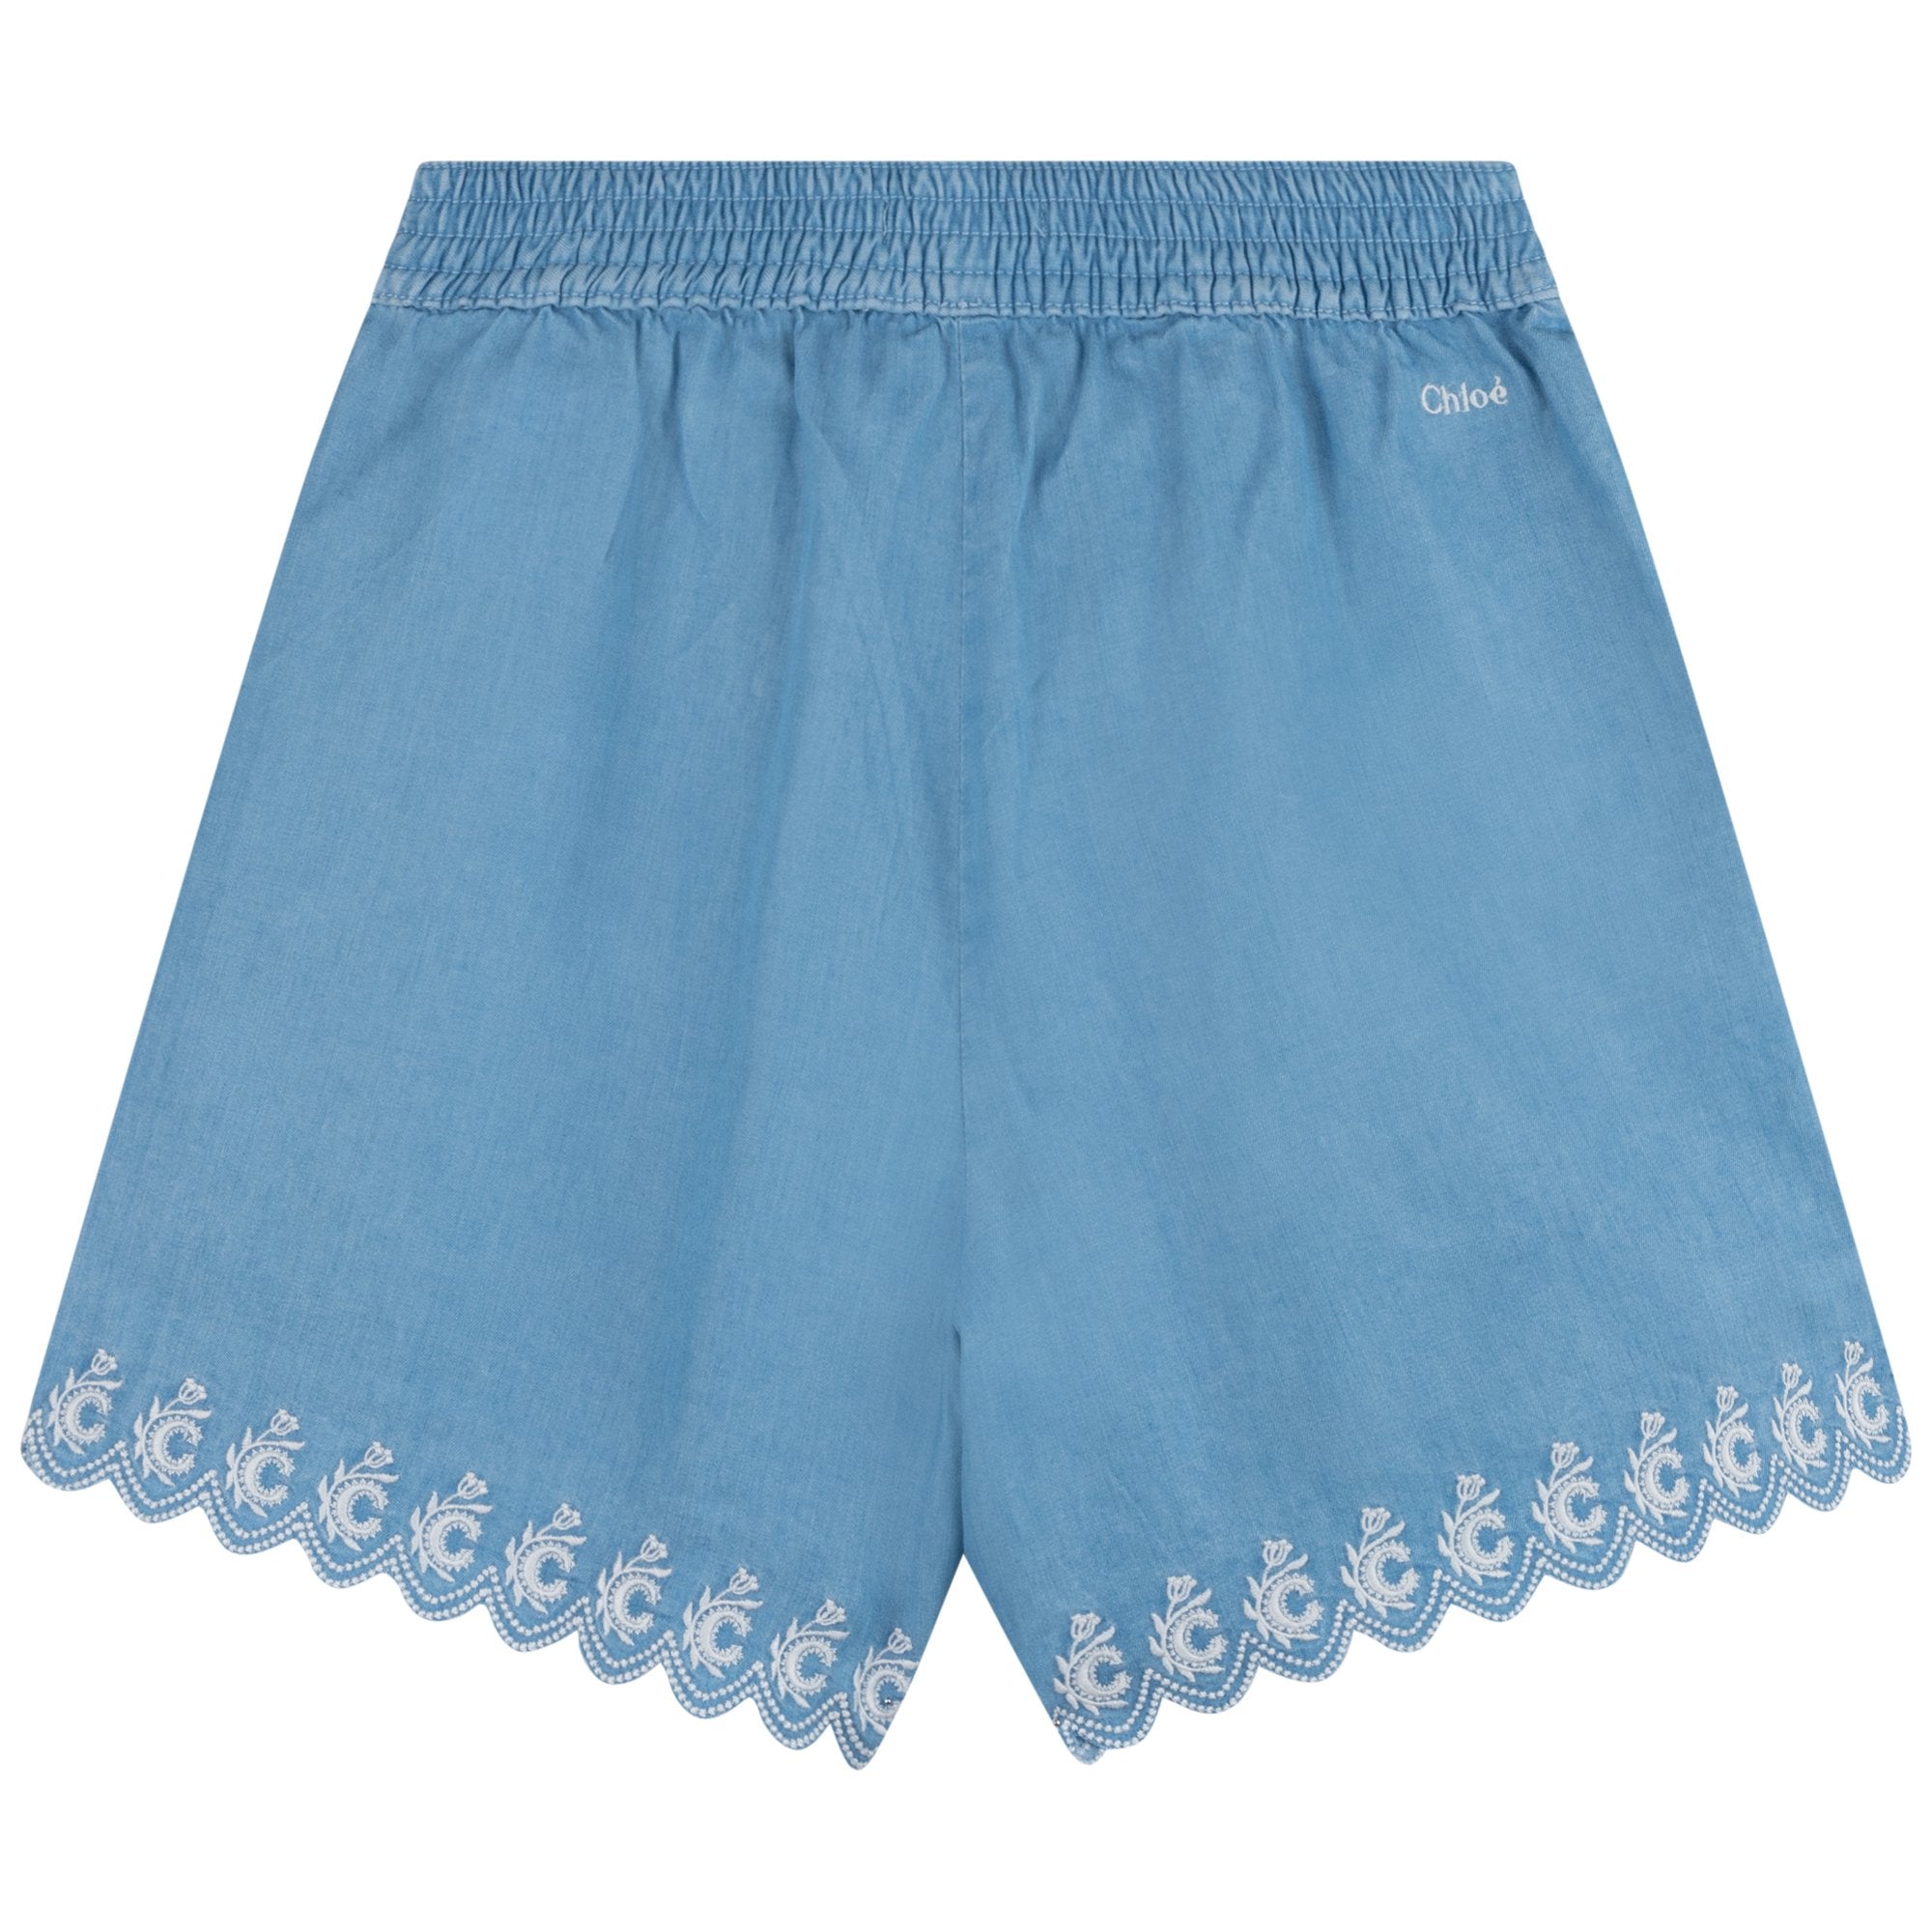 Chloe Girls Blue Shorts